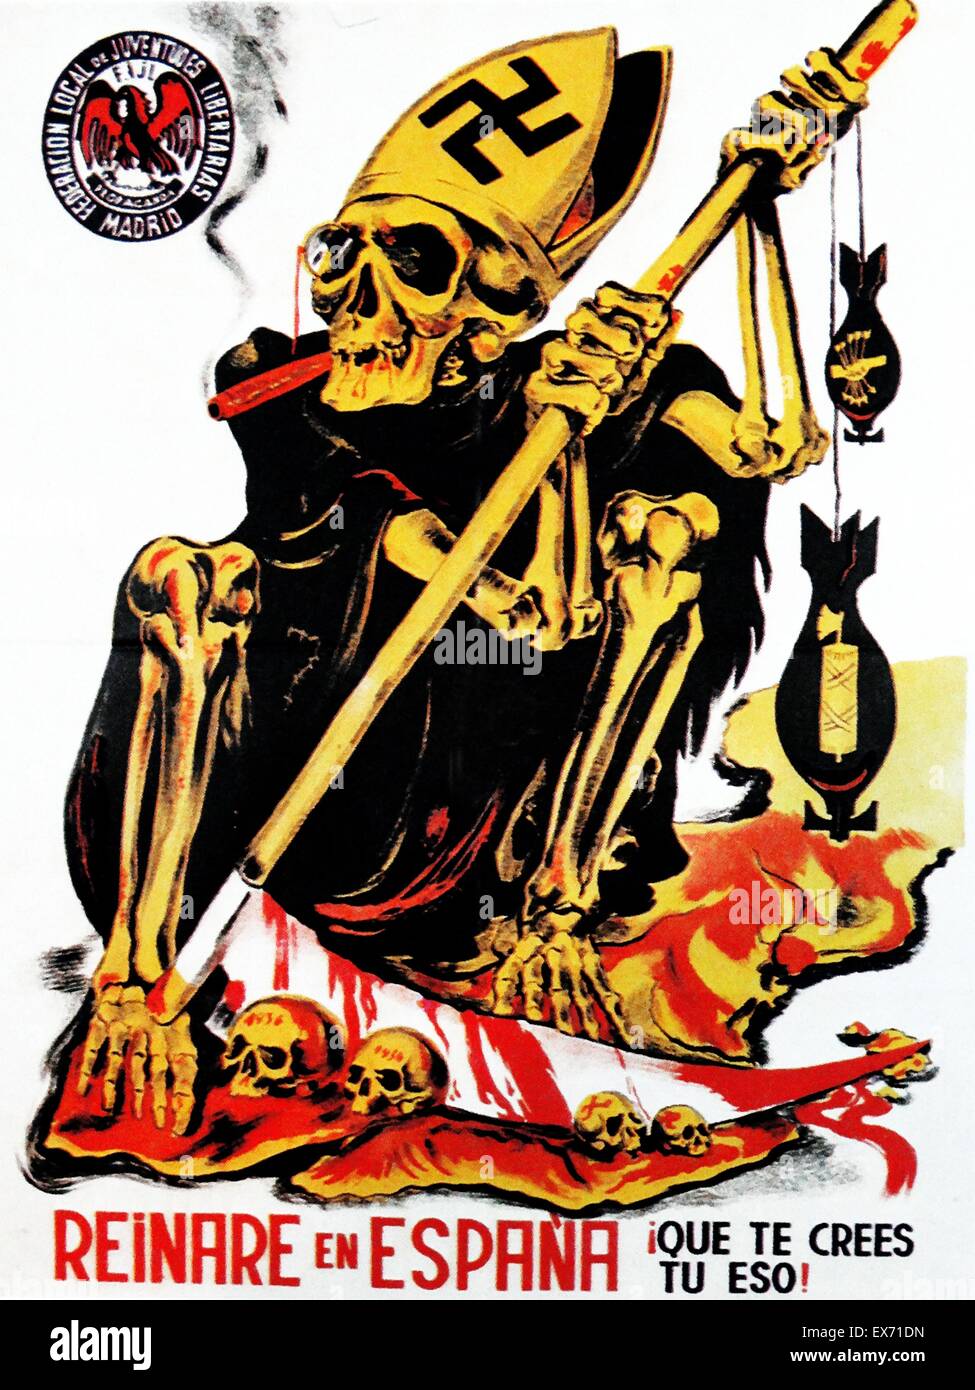 Anti Falangist poster di propaganda in Spagna durante la Guerra Civile Spagnola. Il cristianesimo (rappresentata dal vescovo di mitre) con il nazismo (rappresentato dalla swastika) e il fascismo (rappresentato dalla fasces-bomba, e con il sangue versato e la morte. Foto Stock